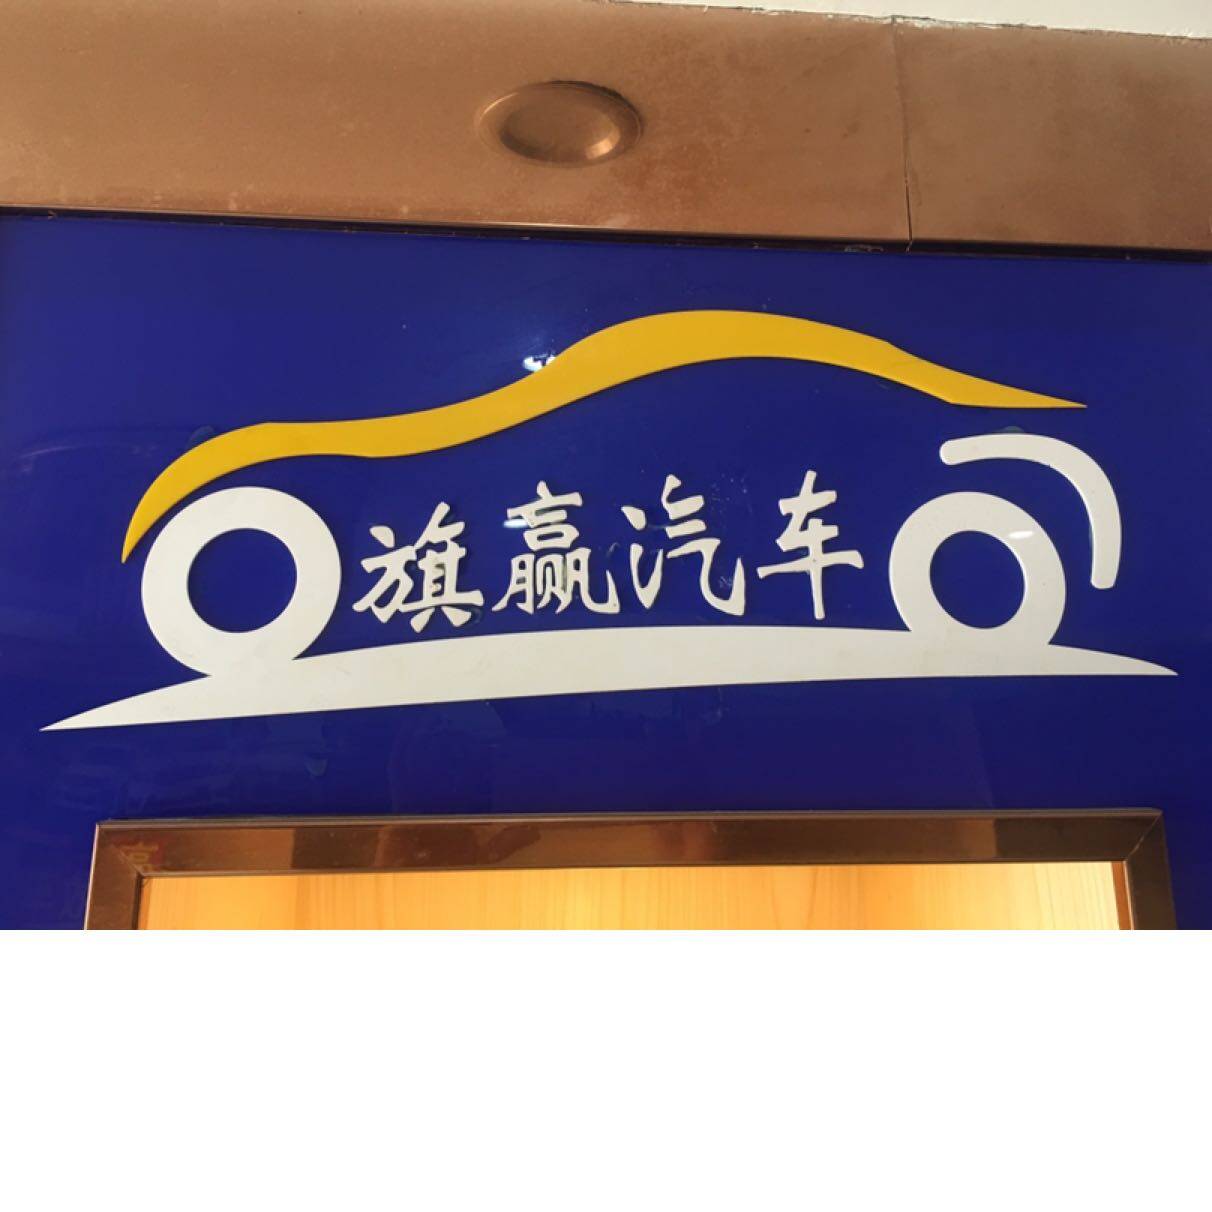 东莞市旗赢汽车贸易有限公司logo